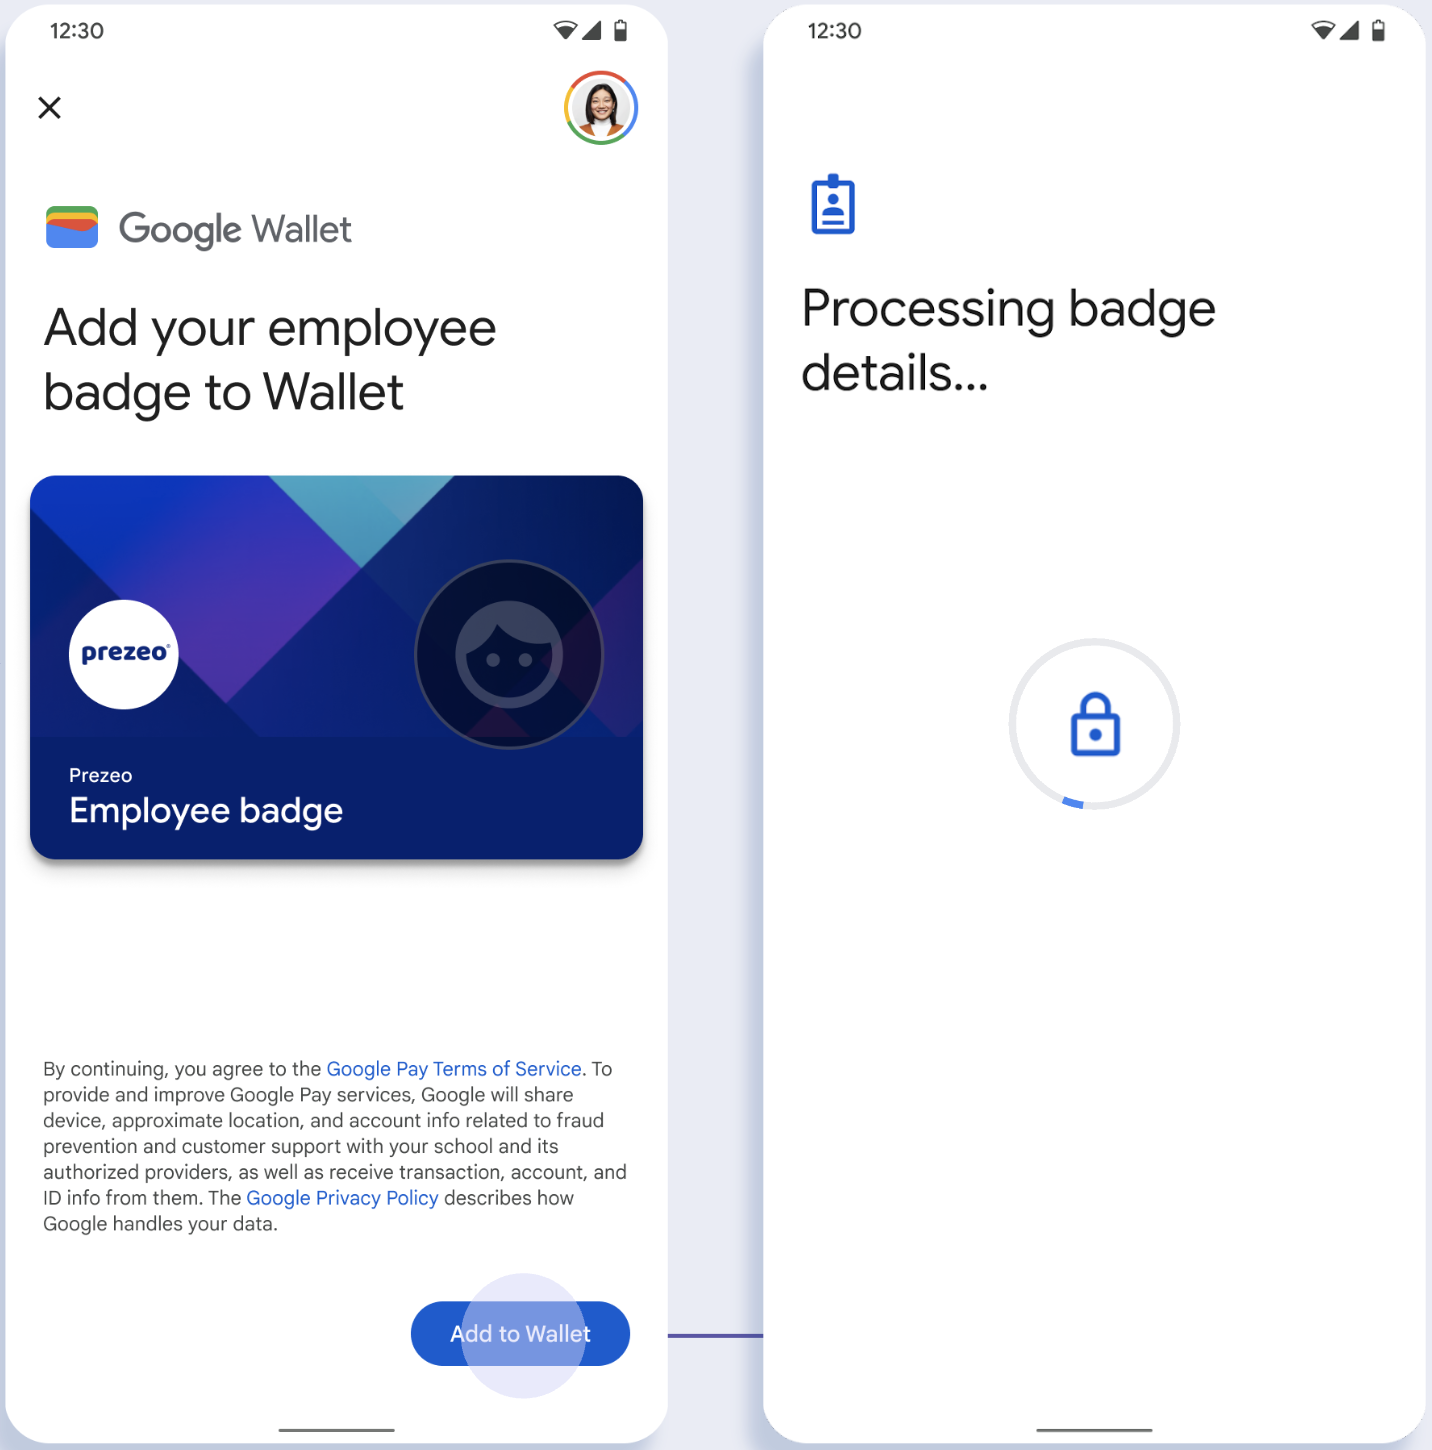 ในหน้าจอแรก แอปเชื่อมต่อกับ Google Wallet ในหน้าจอที่ 2 ผู้ใช้ยอมรับข้อกำหนดในการให้บริการและดำเนินการต่อ